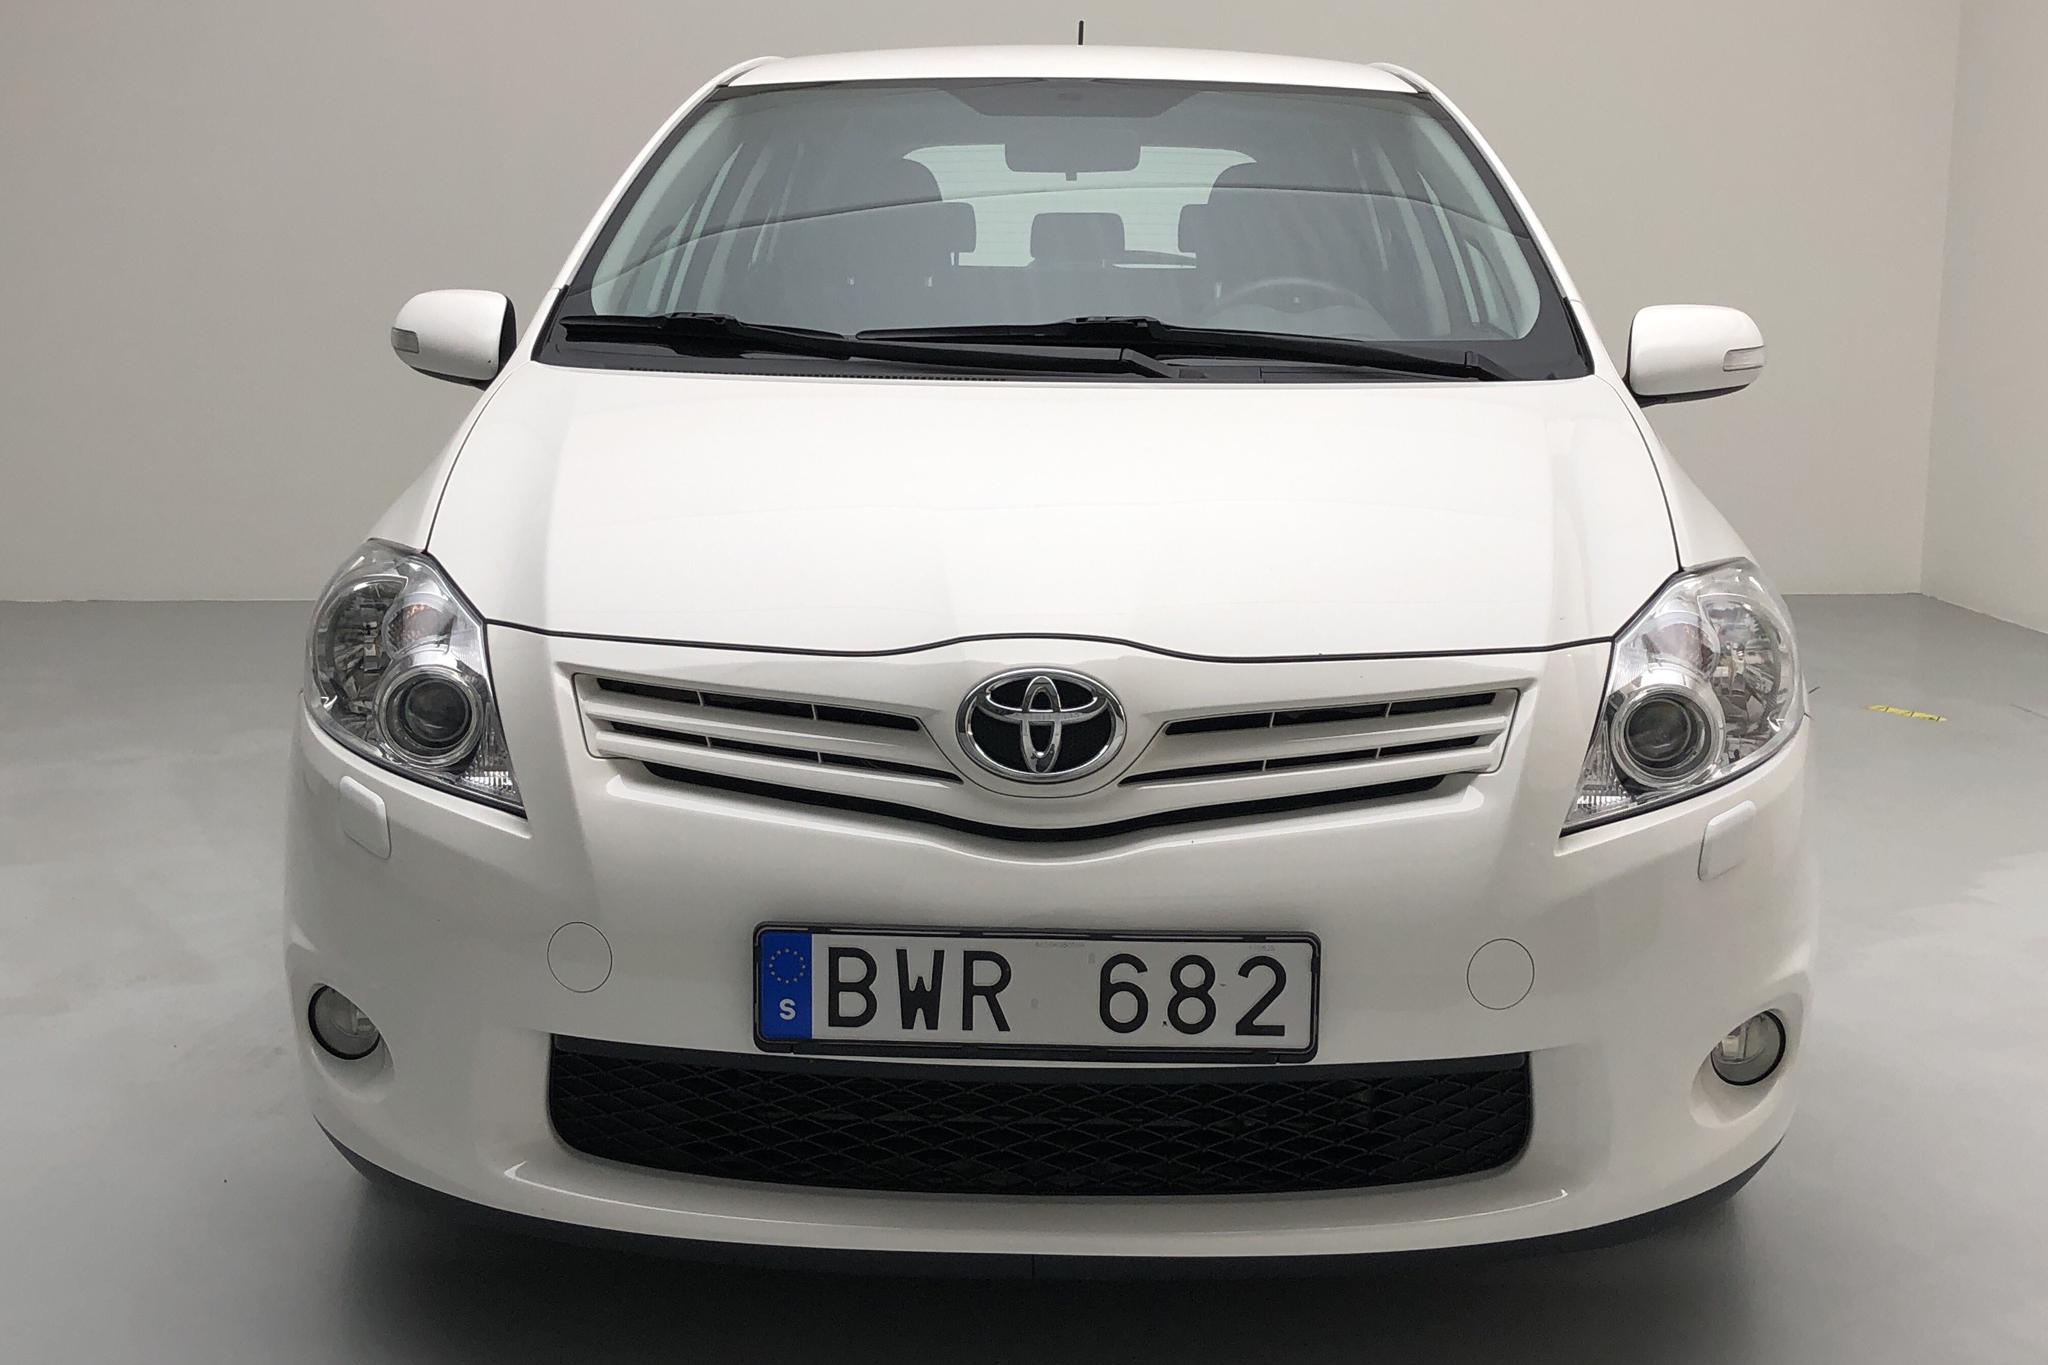 Toyota Auris 1.6 VVT-i 5dr (132hk) - 57 100 km - Manual - white - 2011